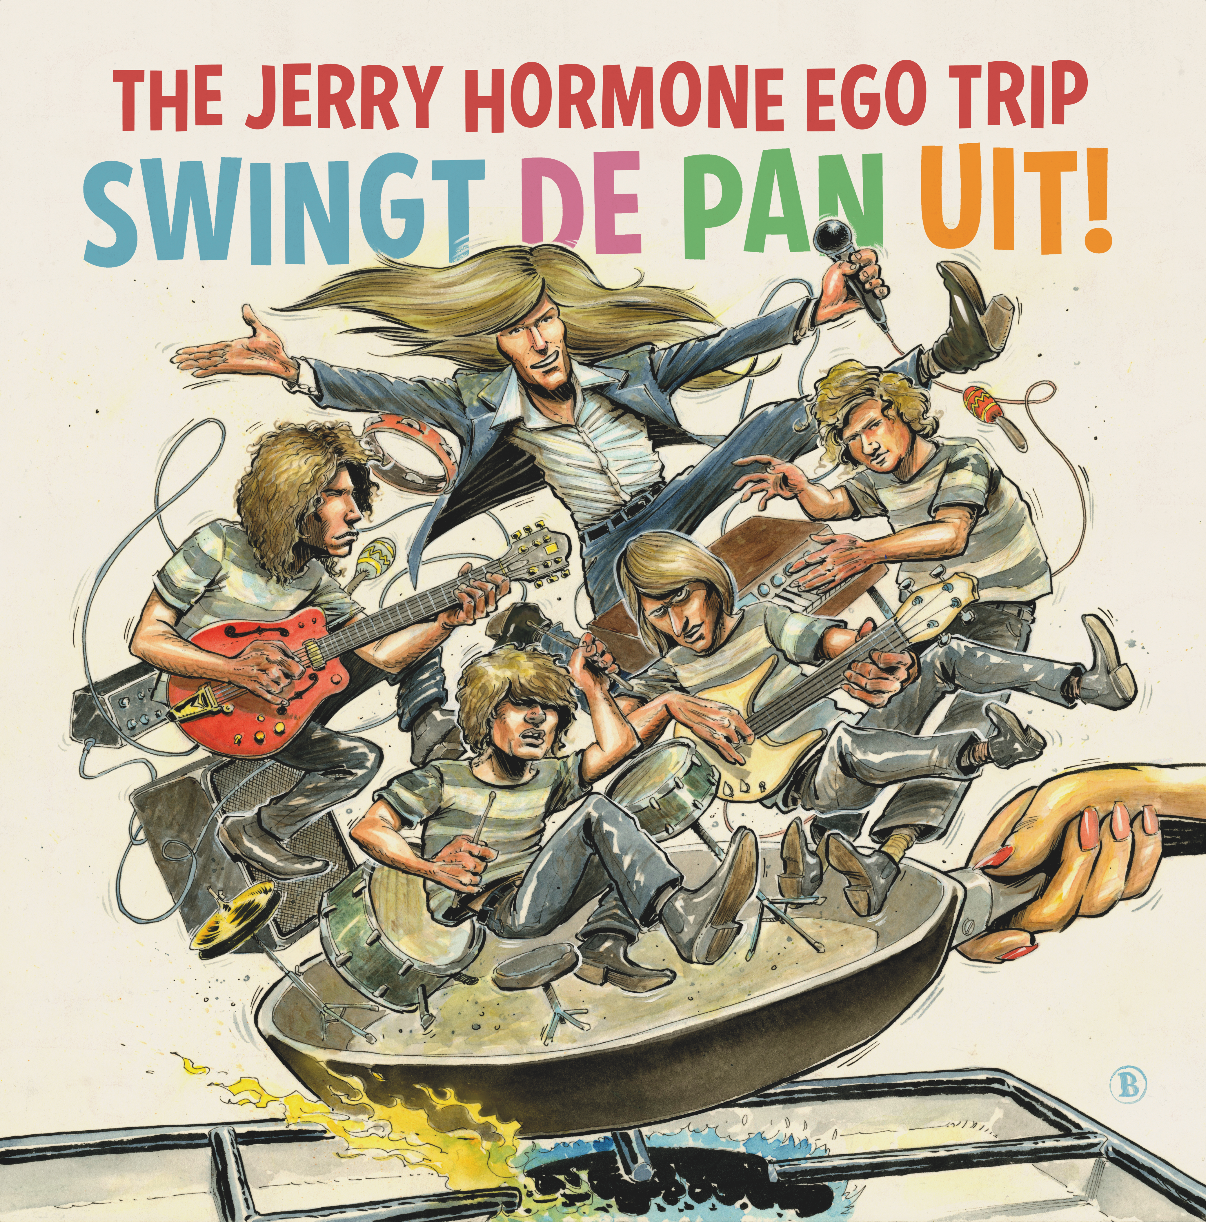 The Jerry Hormone Ego Trip swingt de pan uit!